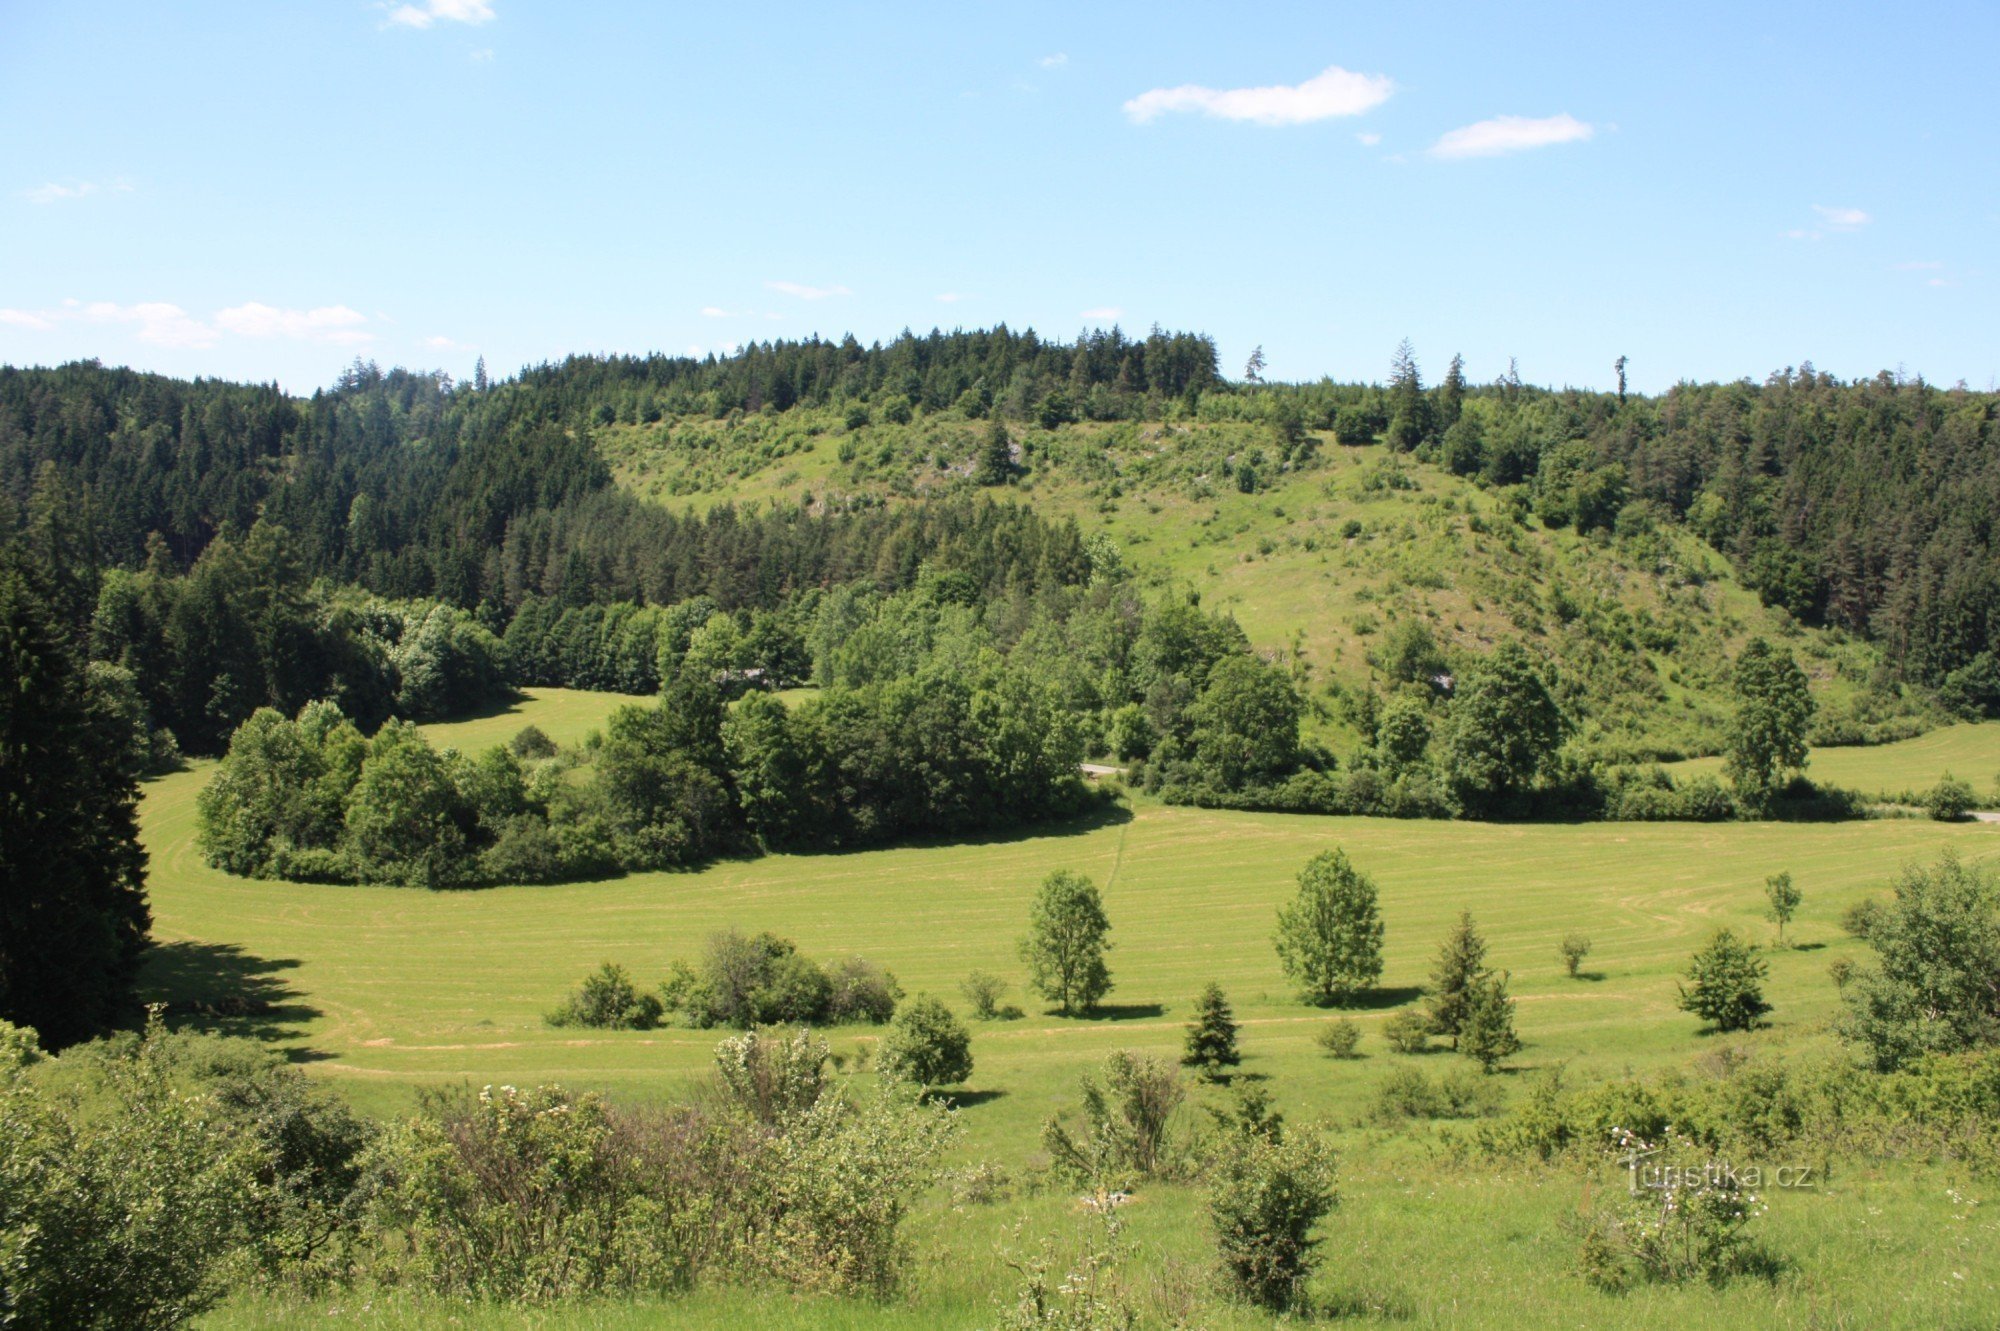 Macošská straň 是 Vilémovice 弯道上方的岩石草原